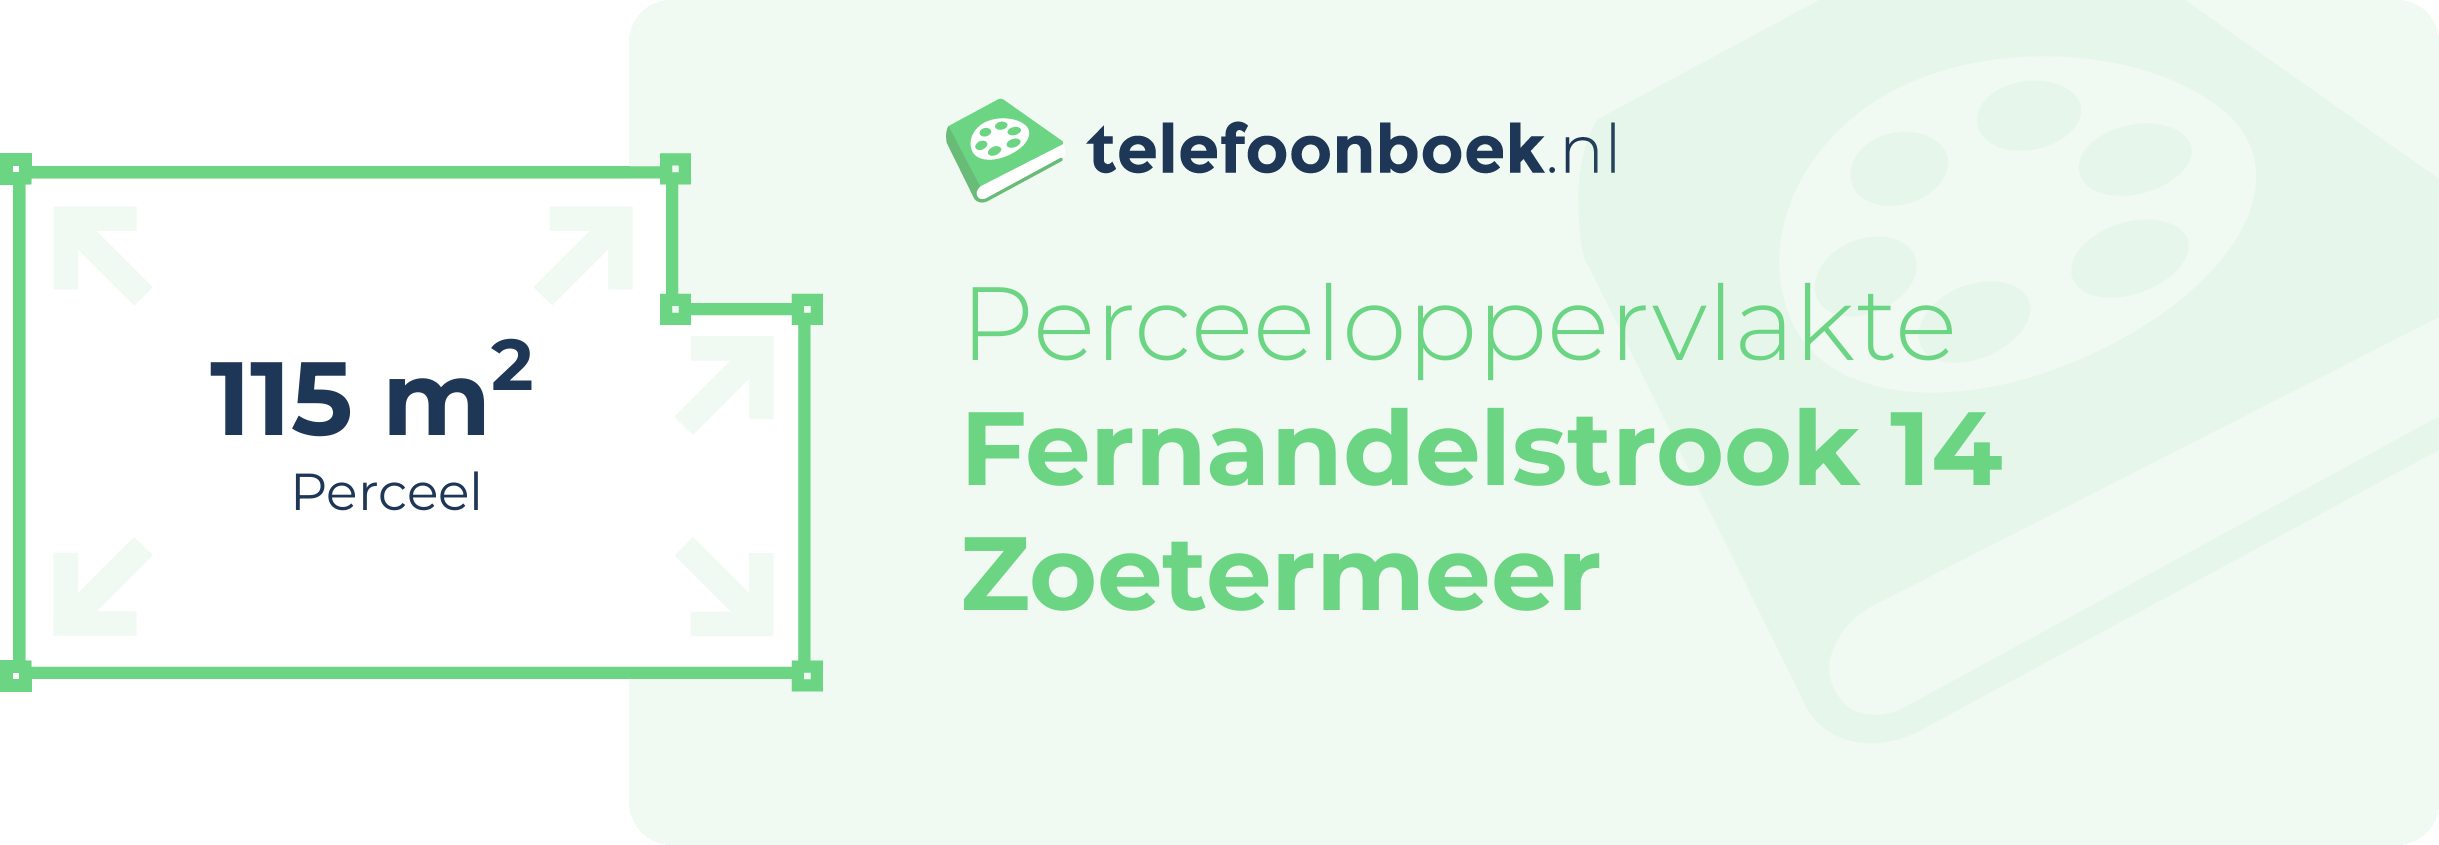 Perceeloppervlakte Fernandelstrook 14 Zoetermeer